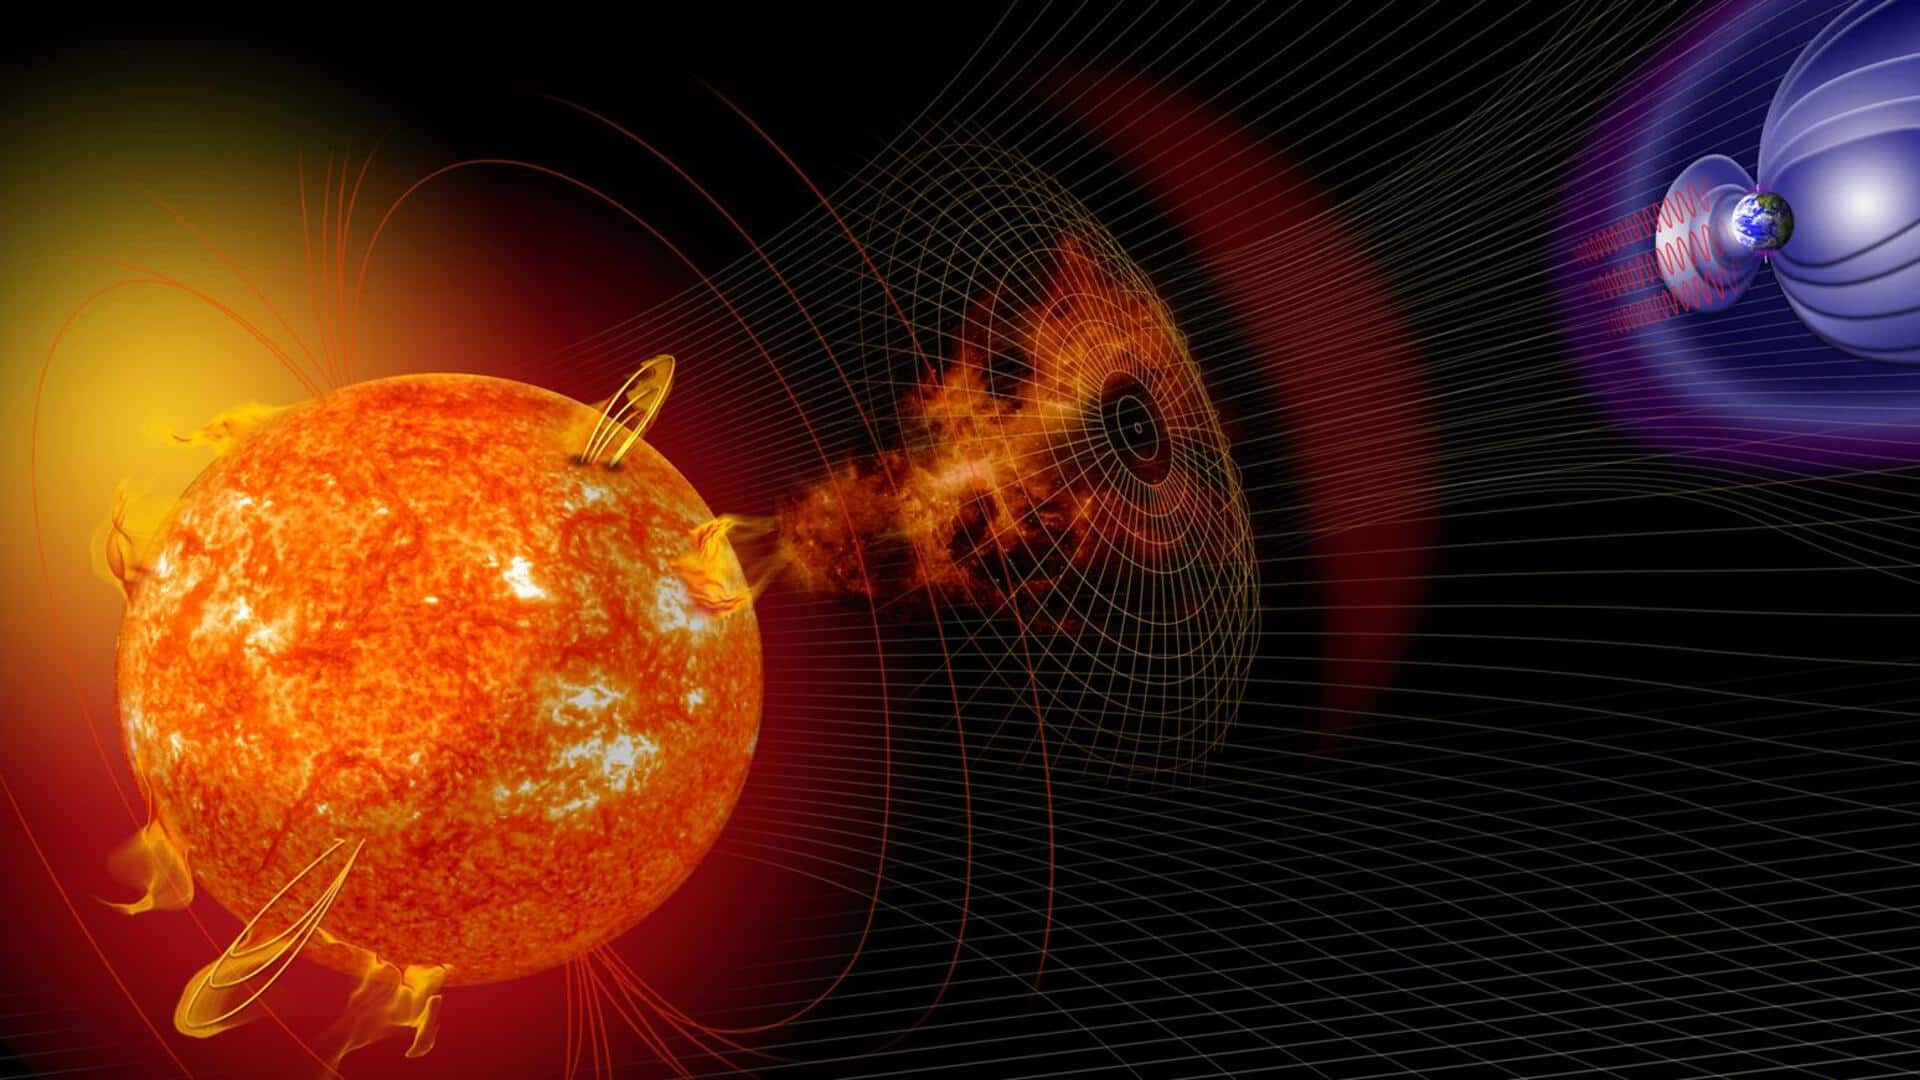 सूर्य पर सक्रिय है 2 लाख किलोमीटर चौड़ा सनस्पॉट, कभी भी हो सकता है विस्फोट